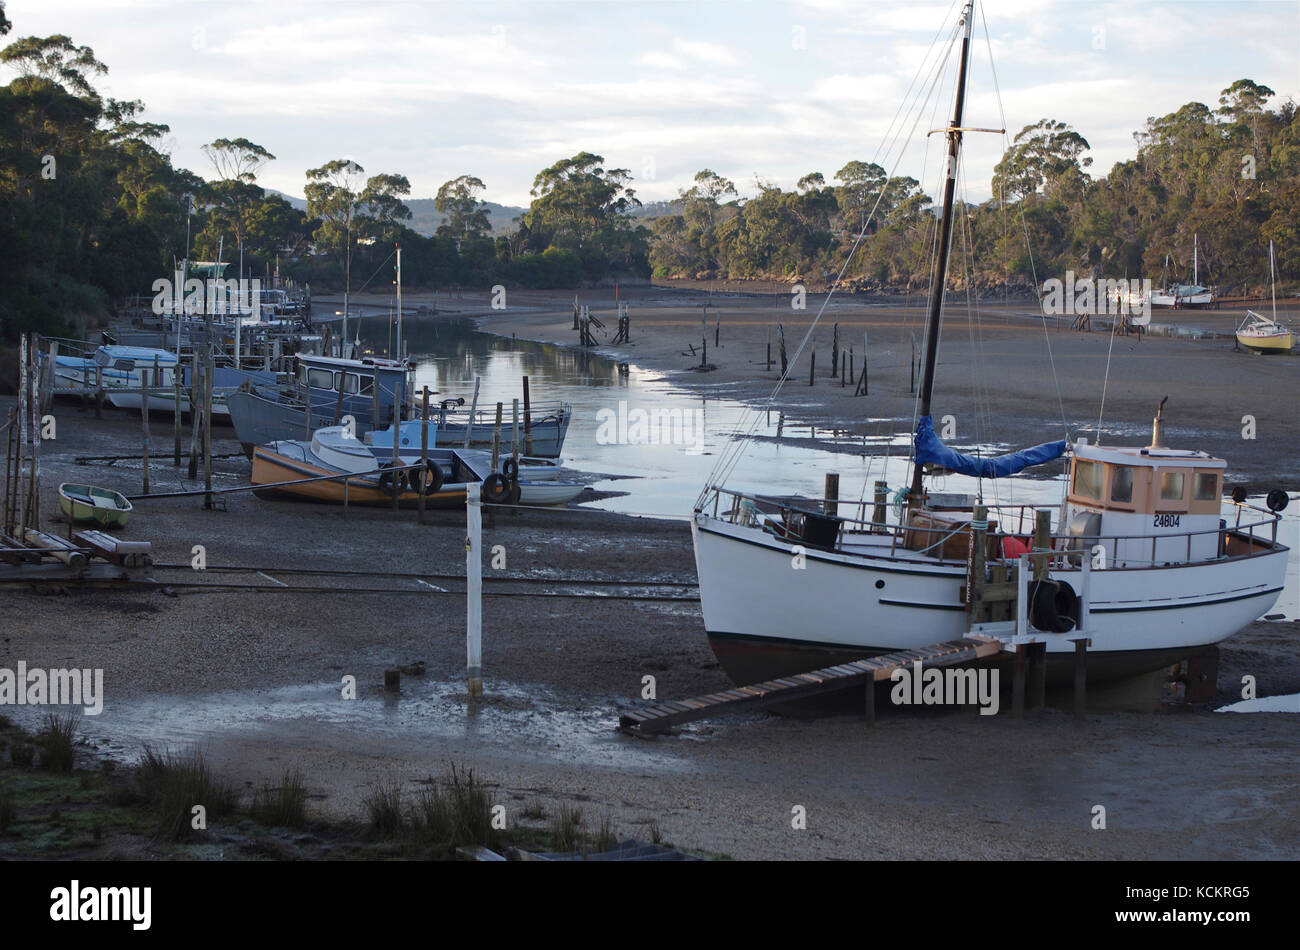 Panatana Rivulet, également connu sous le nom de Muddy Creek, à marée basse, un site populaire d'amarrage de petits bateaux. Port Sorell, nord-ouest de la Tasmanie, Australie Banque D'Images